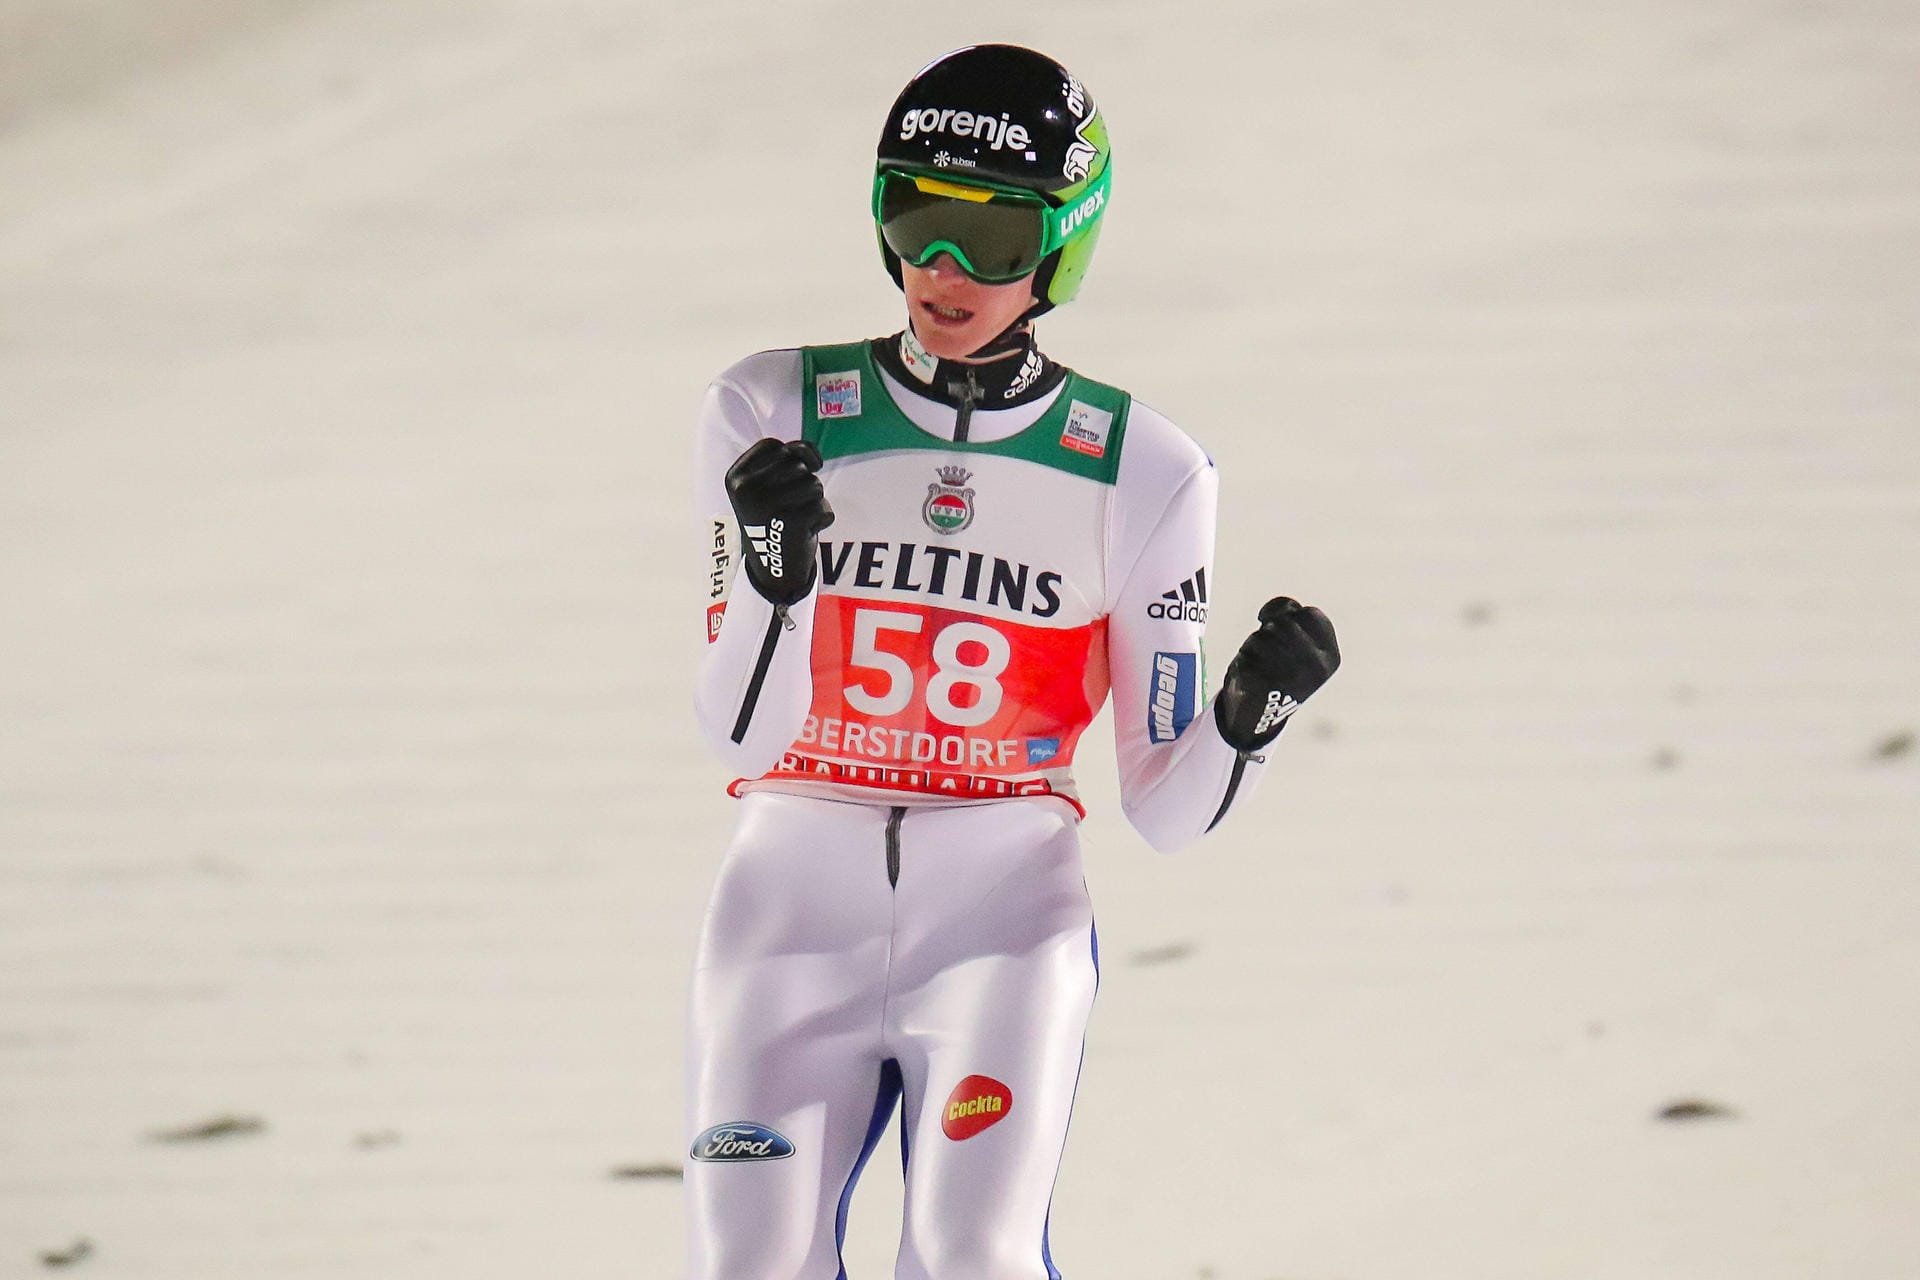 2016: Ein Slowene beendete die Tournee-Vorherrschaft der Österreicher. Erstmals seit 2008 gab es einen Tournee-Sieger, der nicht aus Österreich kam. Peter Prevc dominierte schon vor der Tournee den Weltcup-Winter und schloss nahtlos daran an. Von den vier Springen gewann Prevc drei, in Oberstdorf wurde er Dritter.